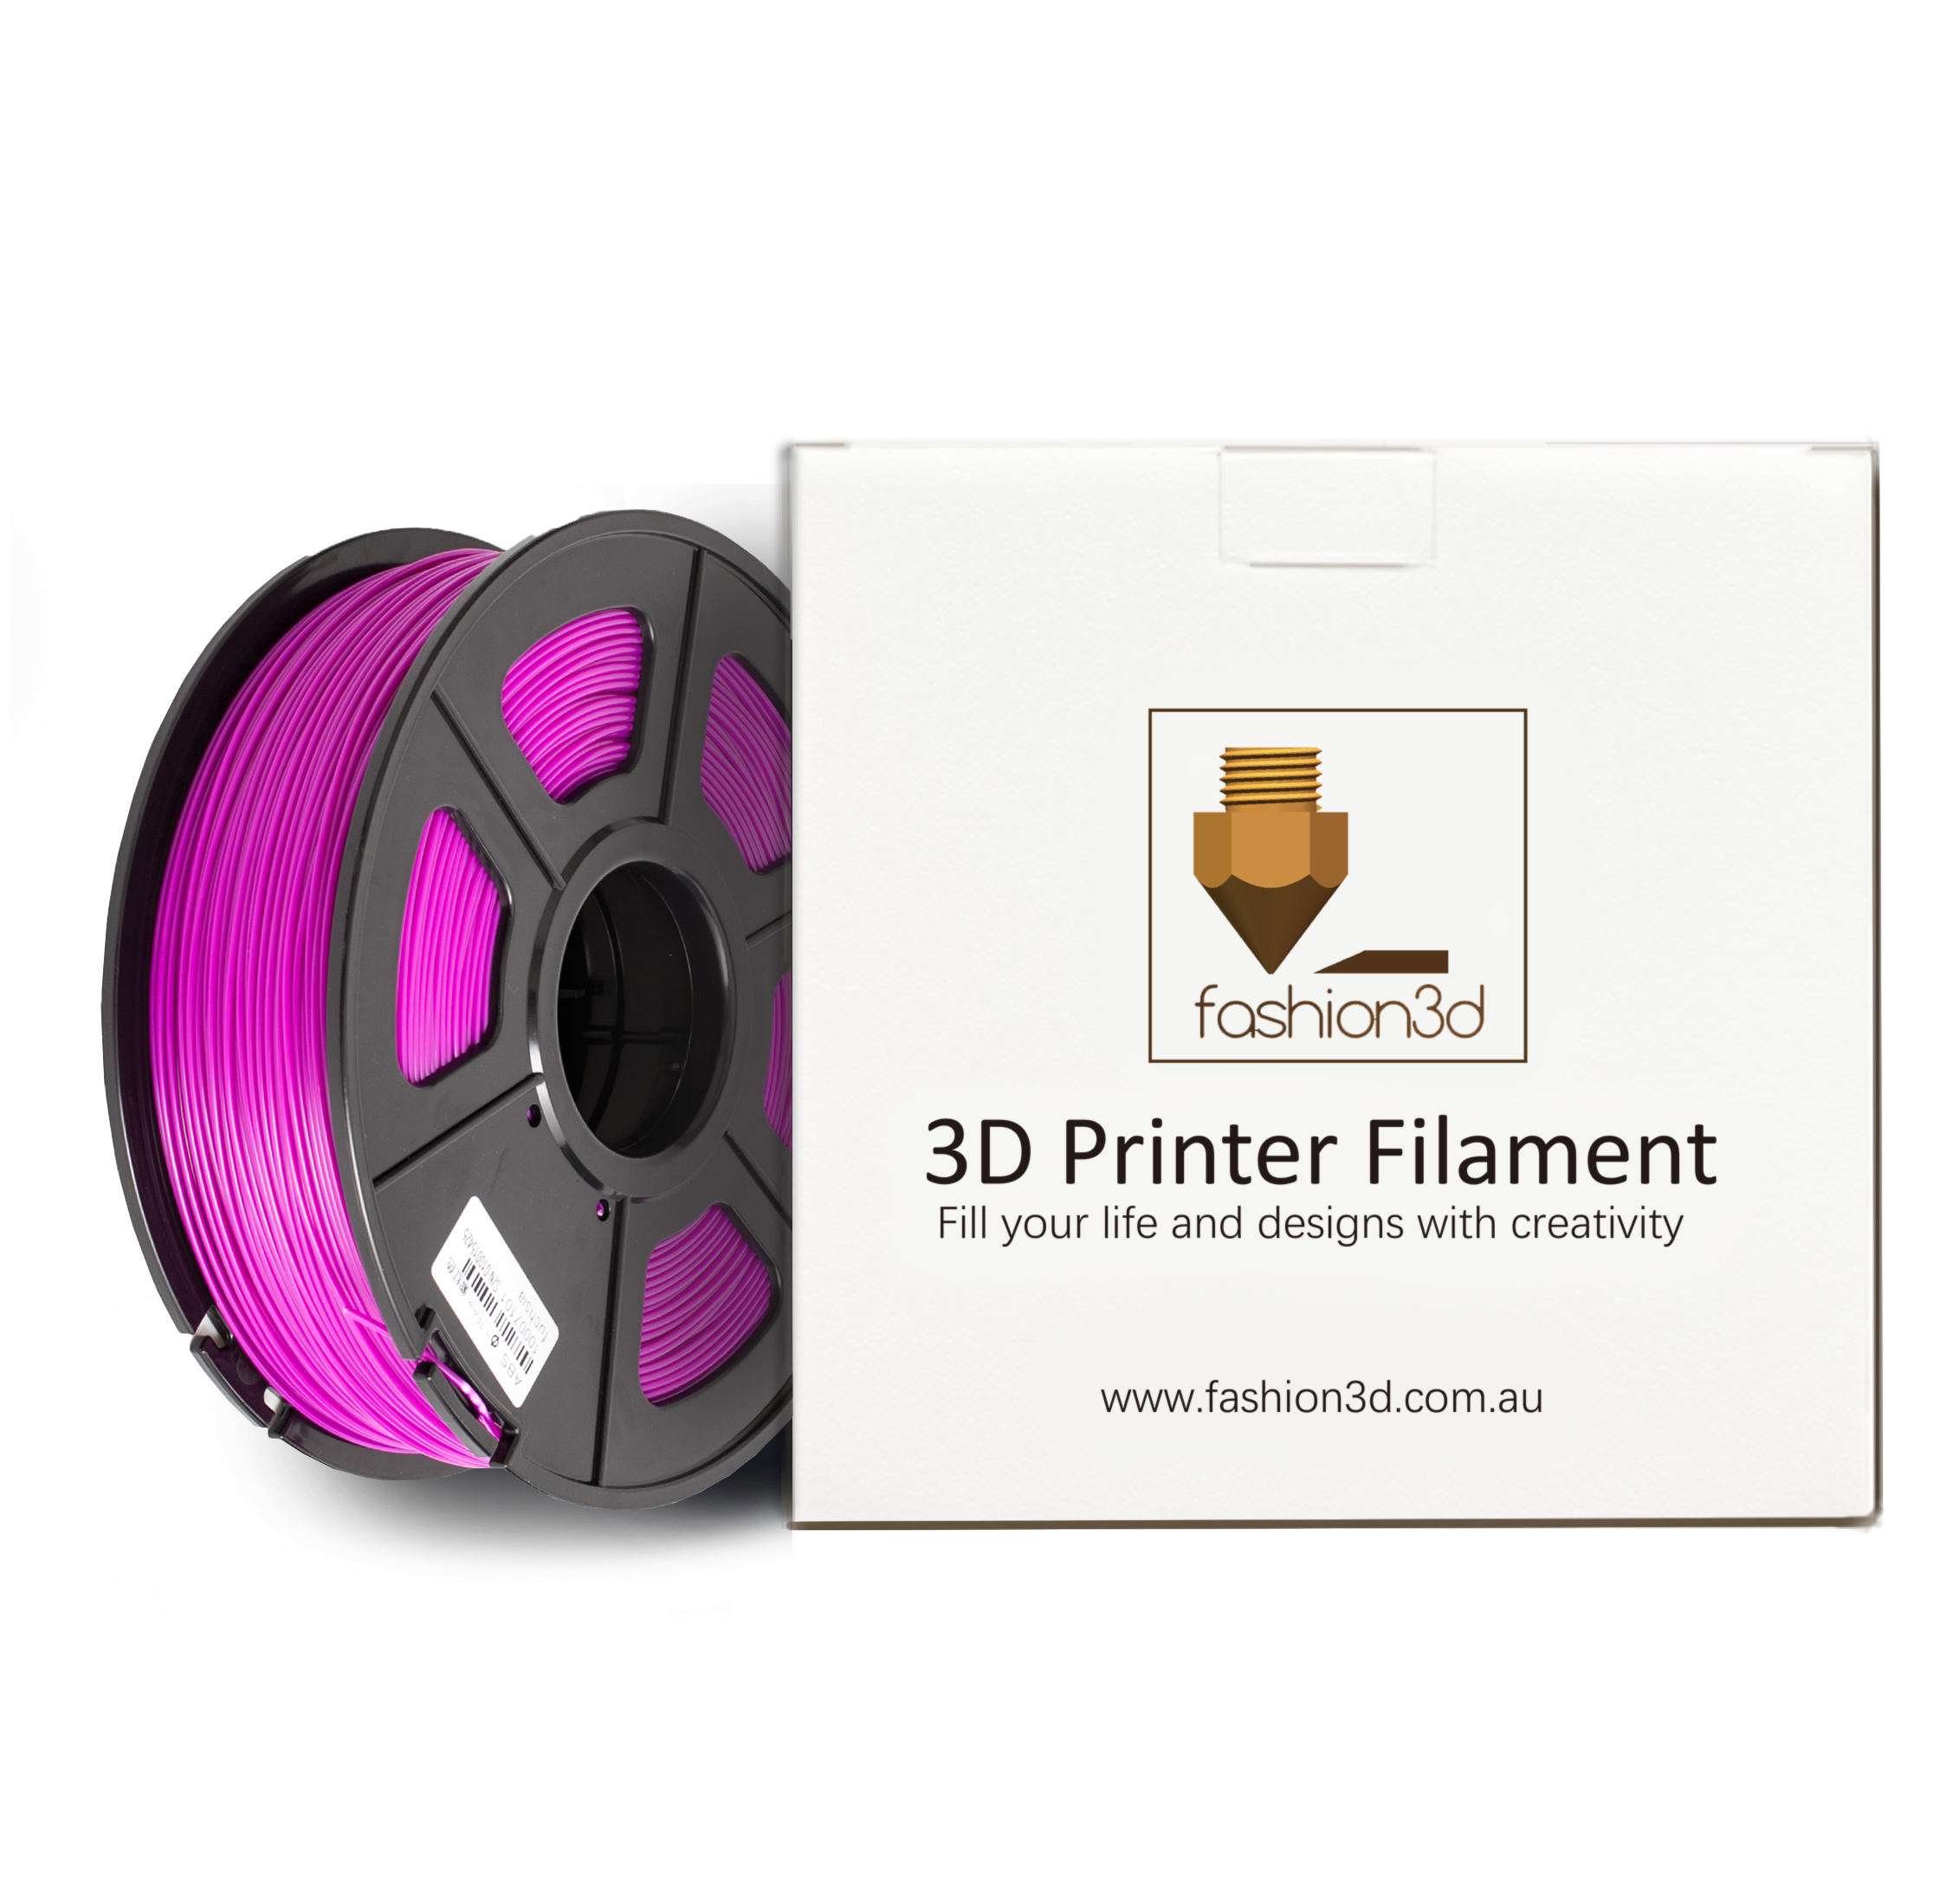 PLA filament